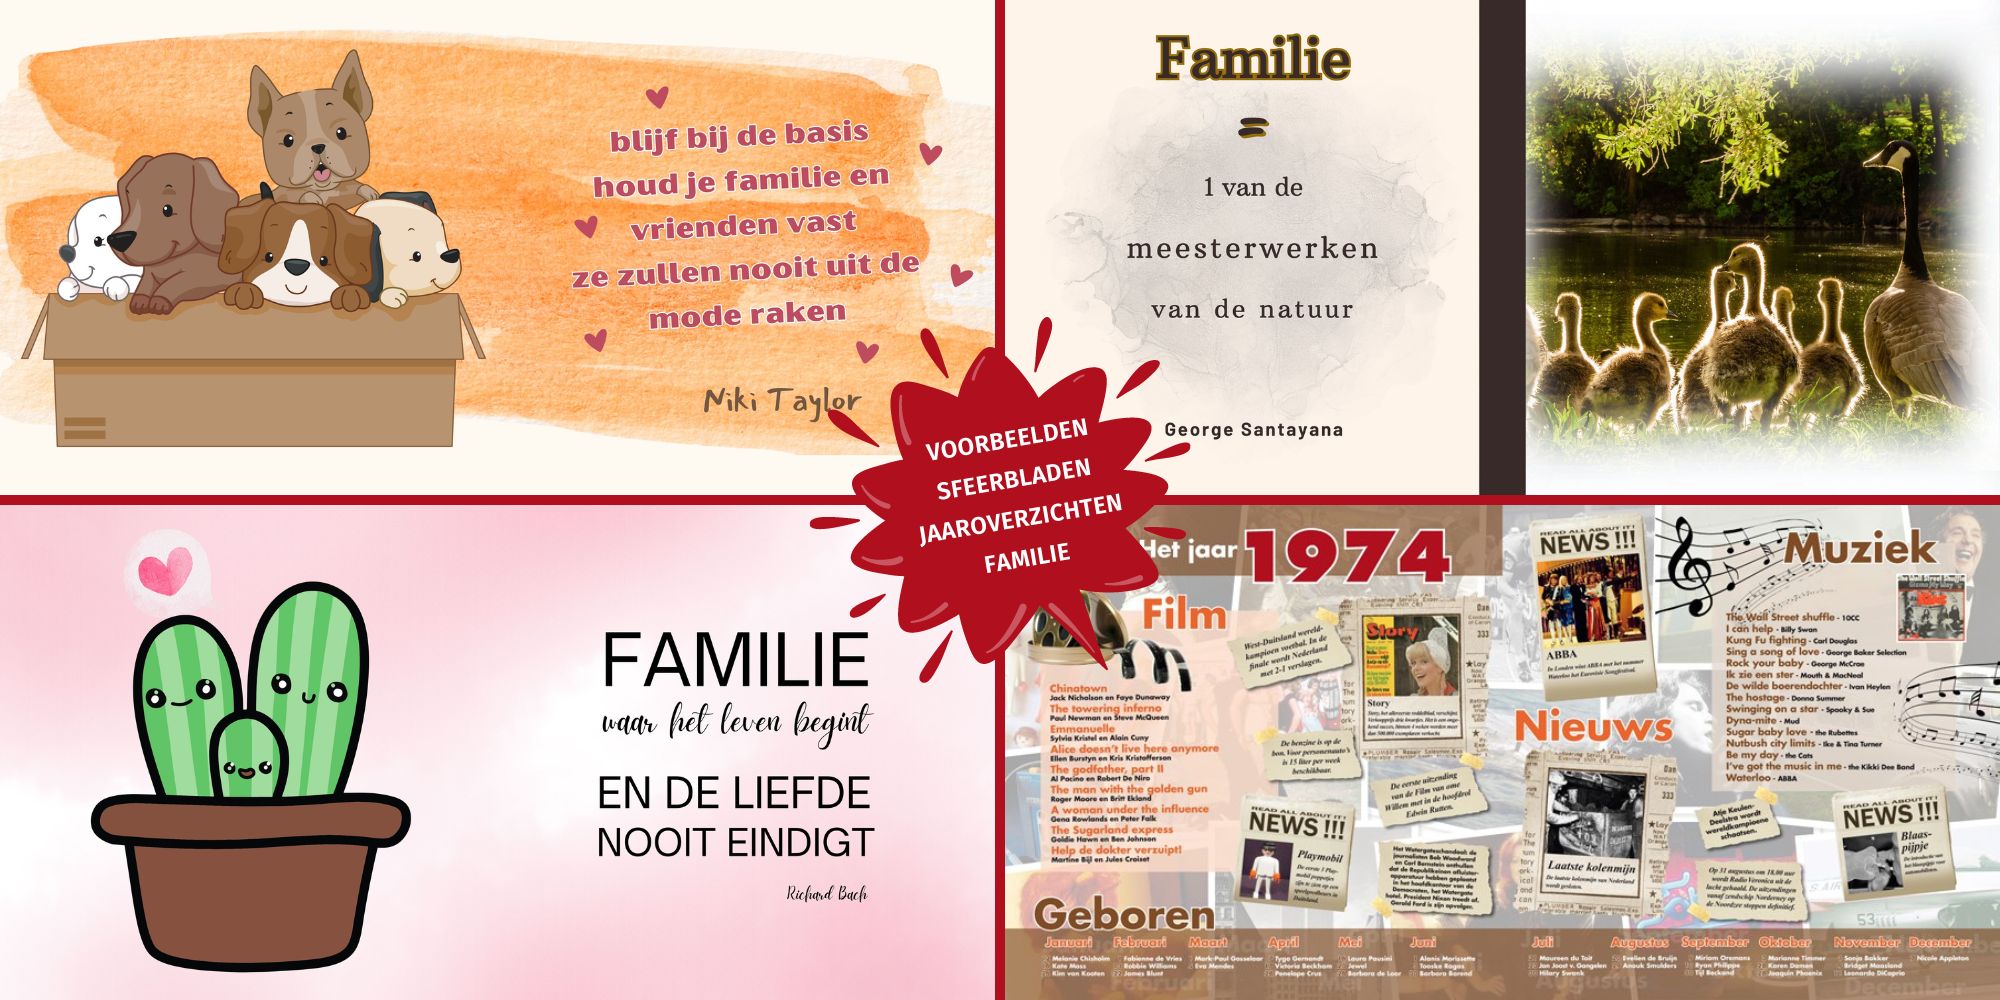 Voorbeelden sfeerbladen jaaroverzichten vriendenboek vriendenboekje familie familieboek reünie